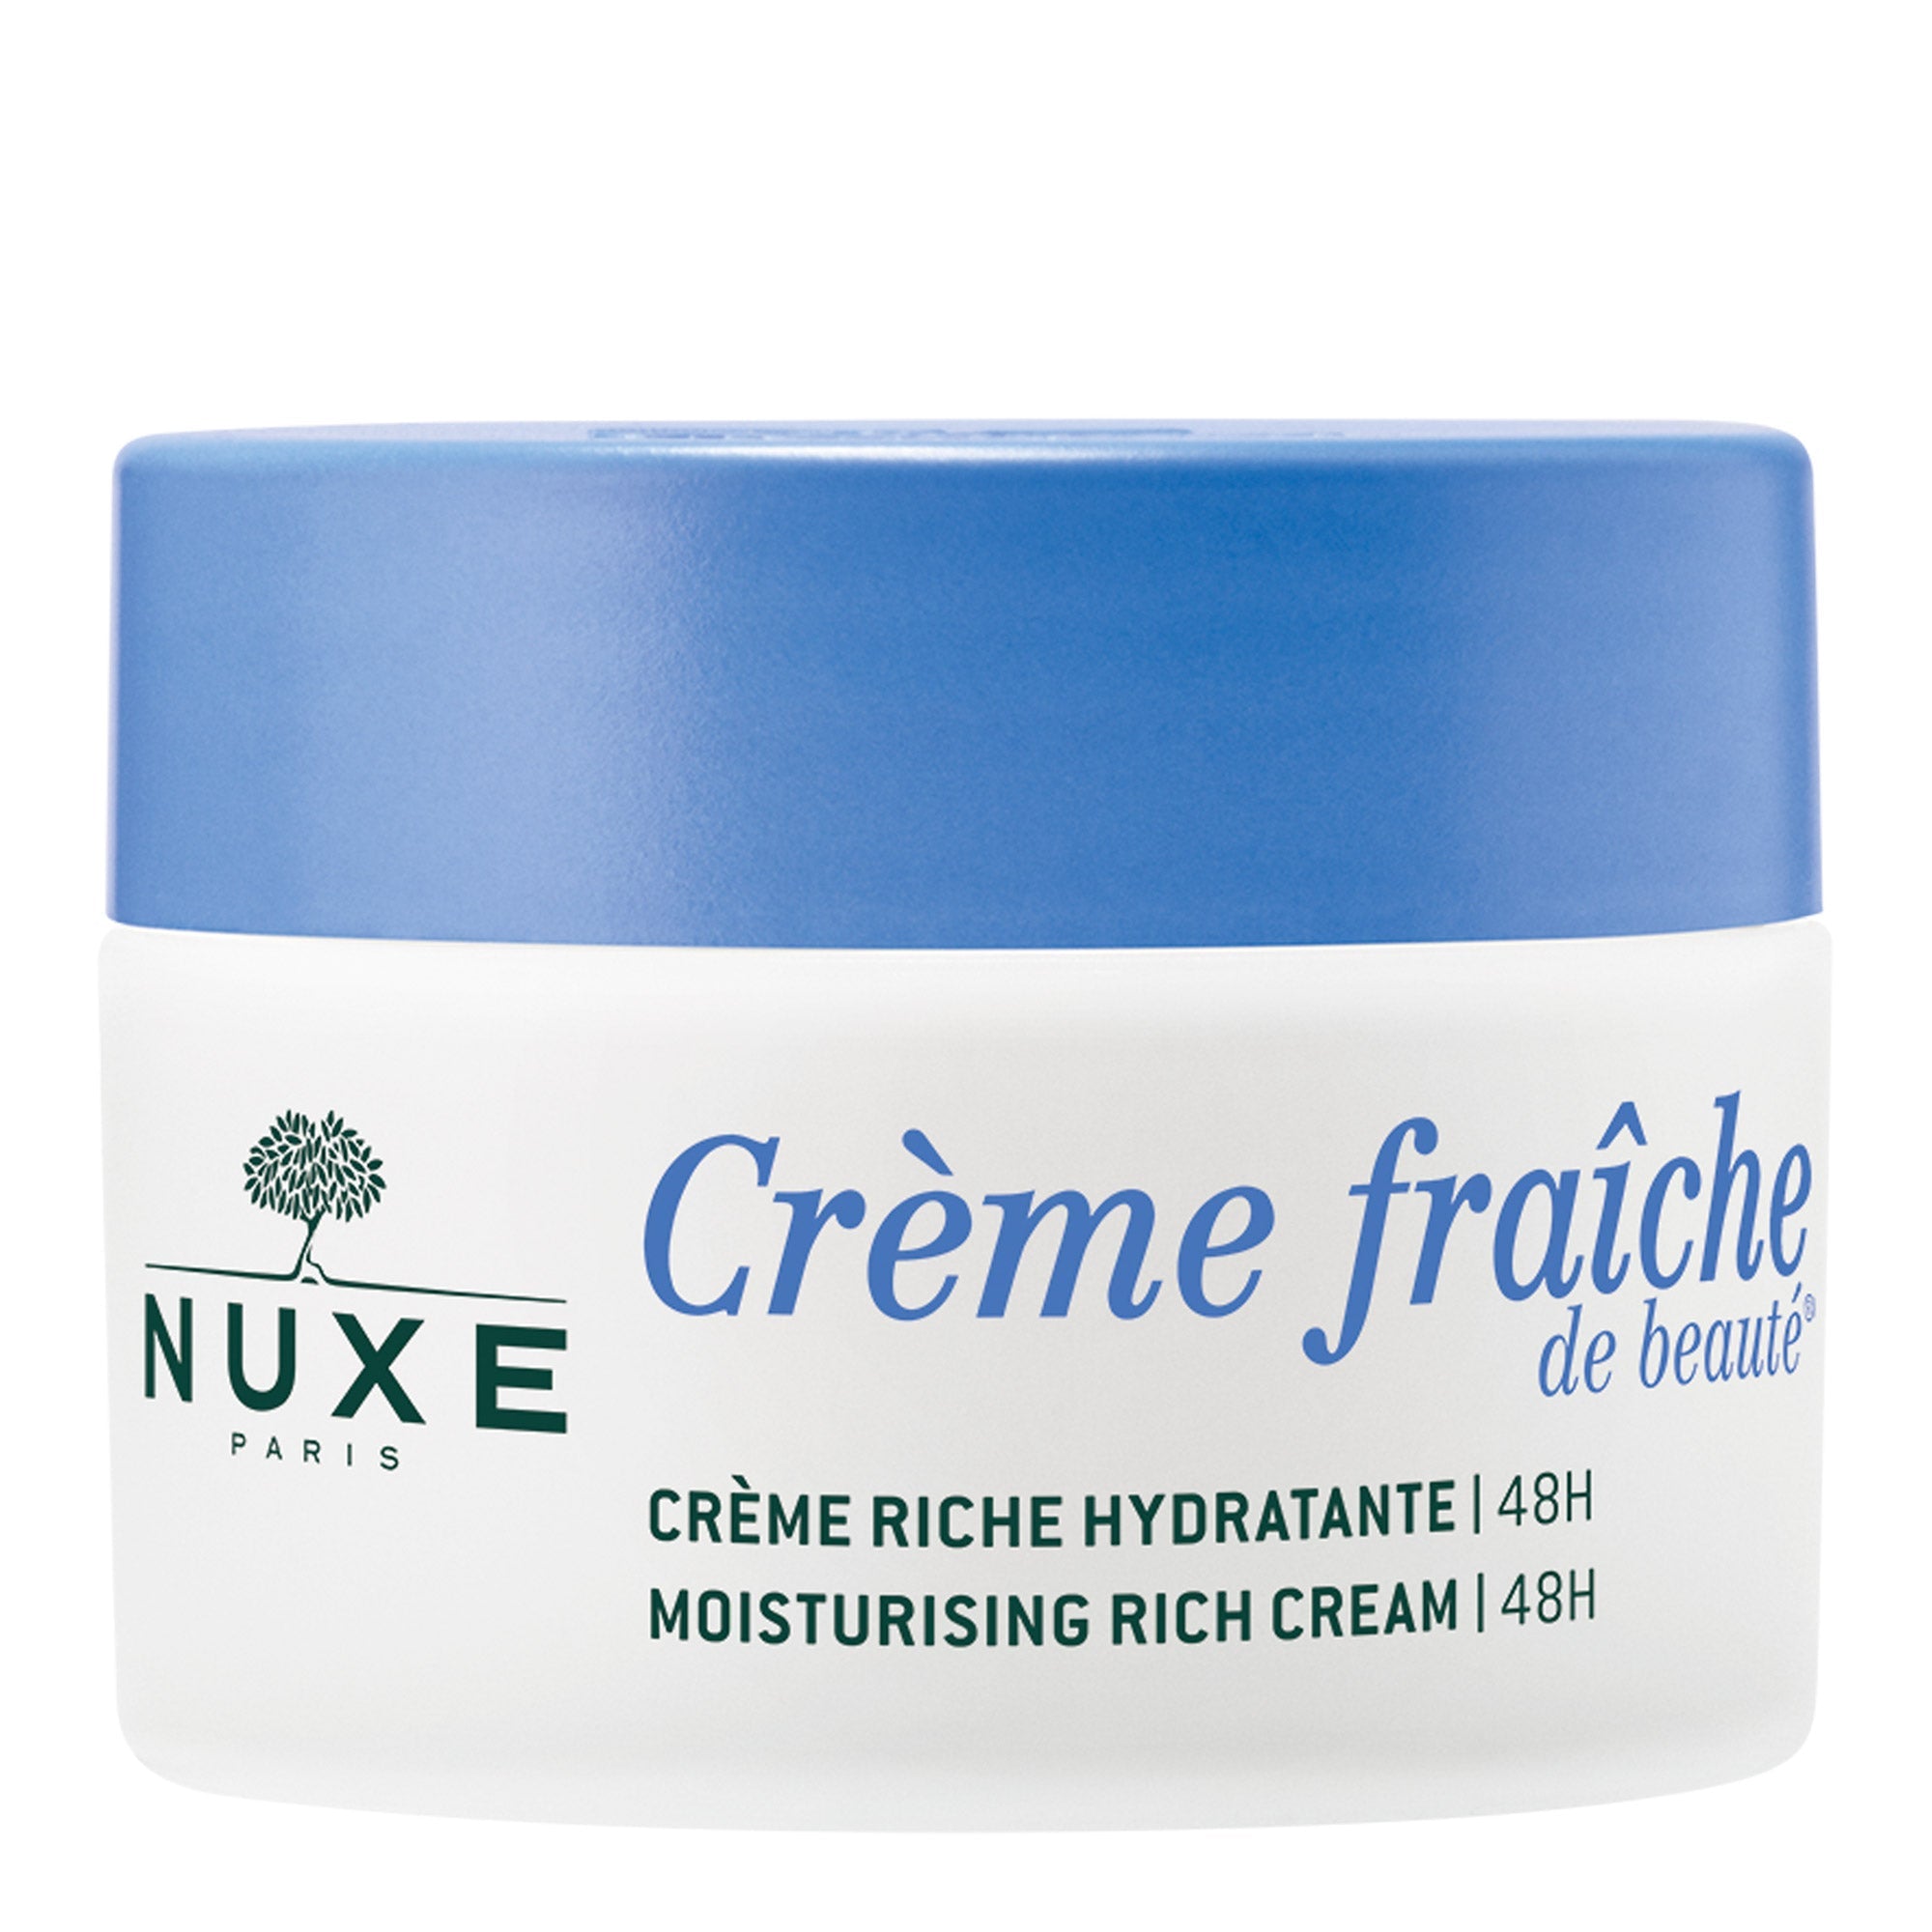 Nuxe Creme Fraiche Moisturising Cream Dry Skin 48HR 50 ml